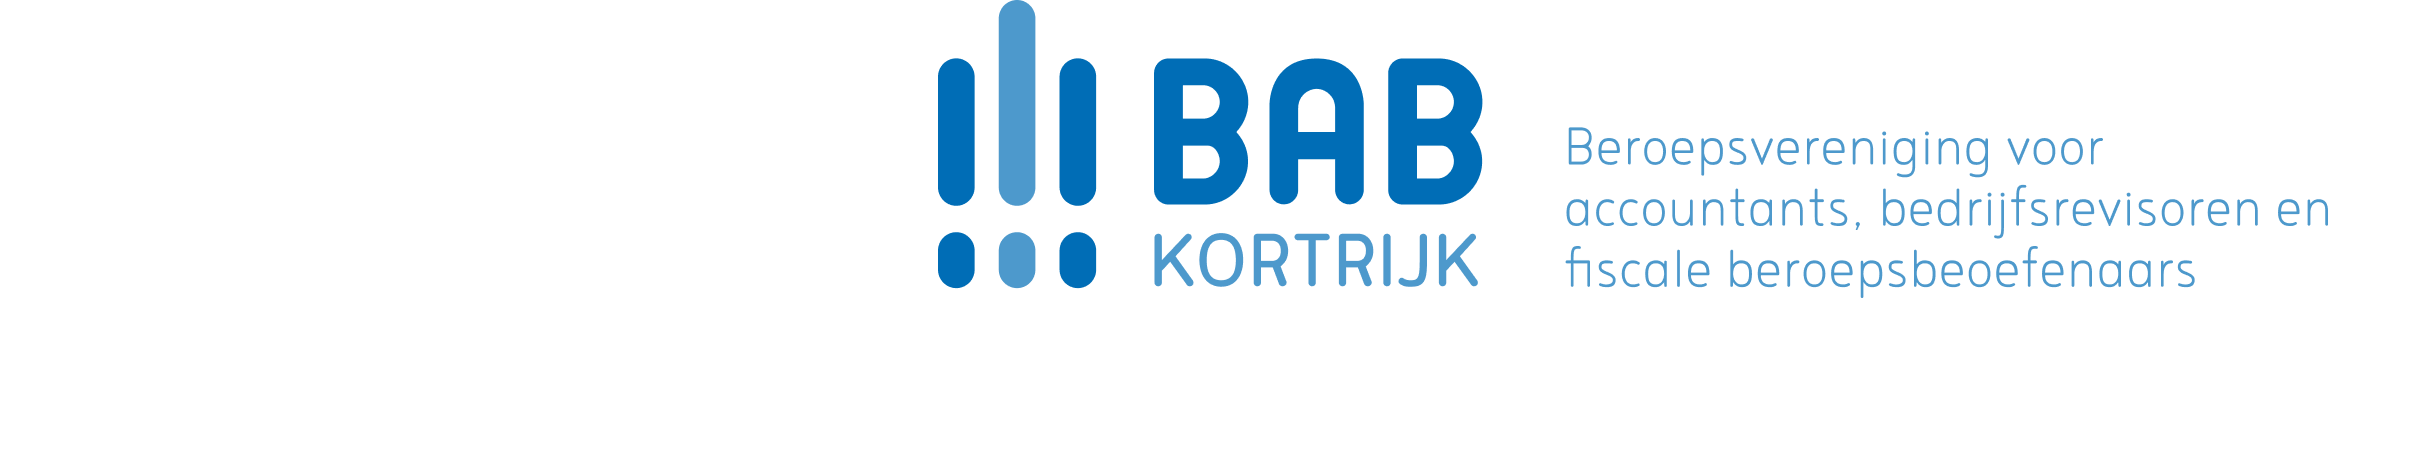 logo horizontal bab